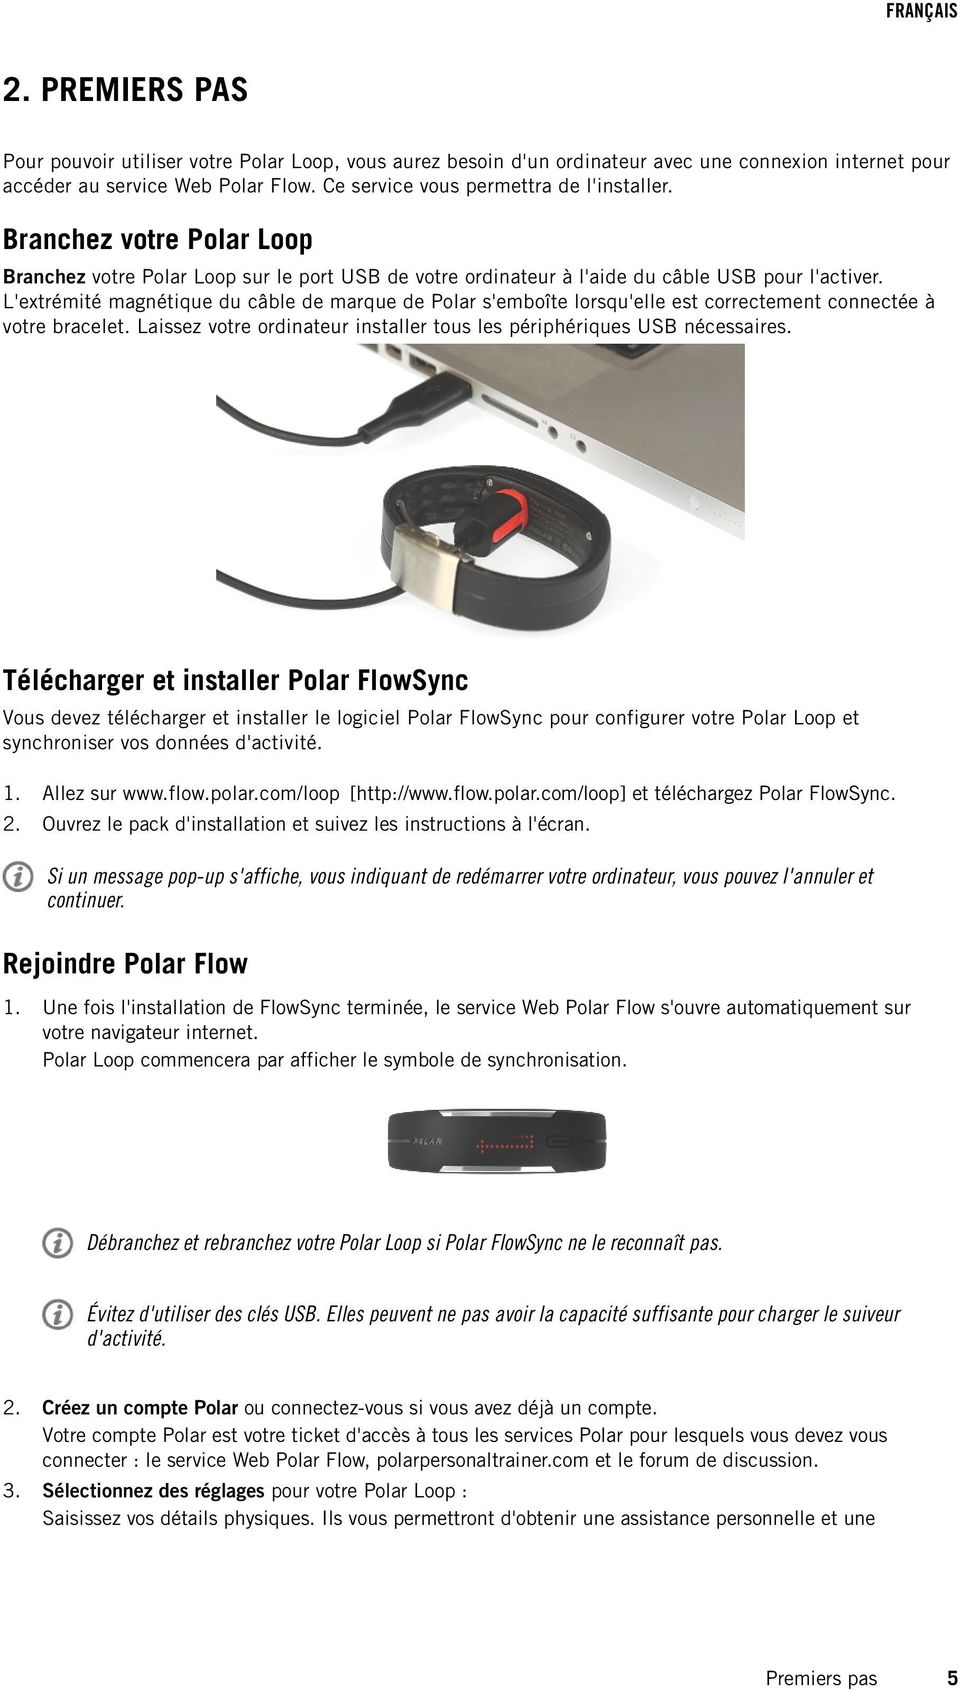 L'extrémité magnétique du câble de marque de Polar s'emboîte lorsqu'elle est correctement connectée à votre bracelet. Laissez votre ordinateur installer tous les périphériques USB nécessaires.